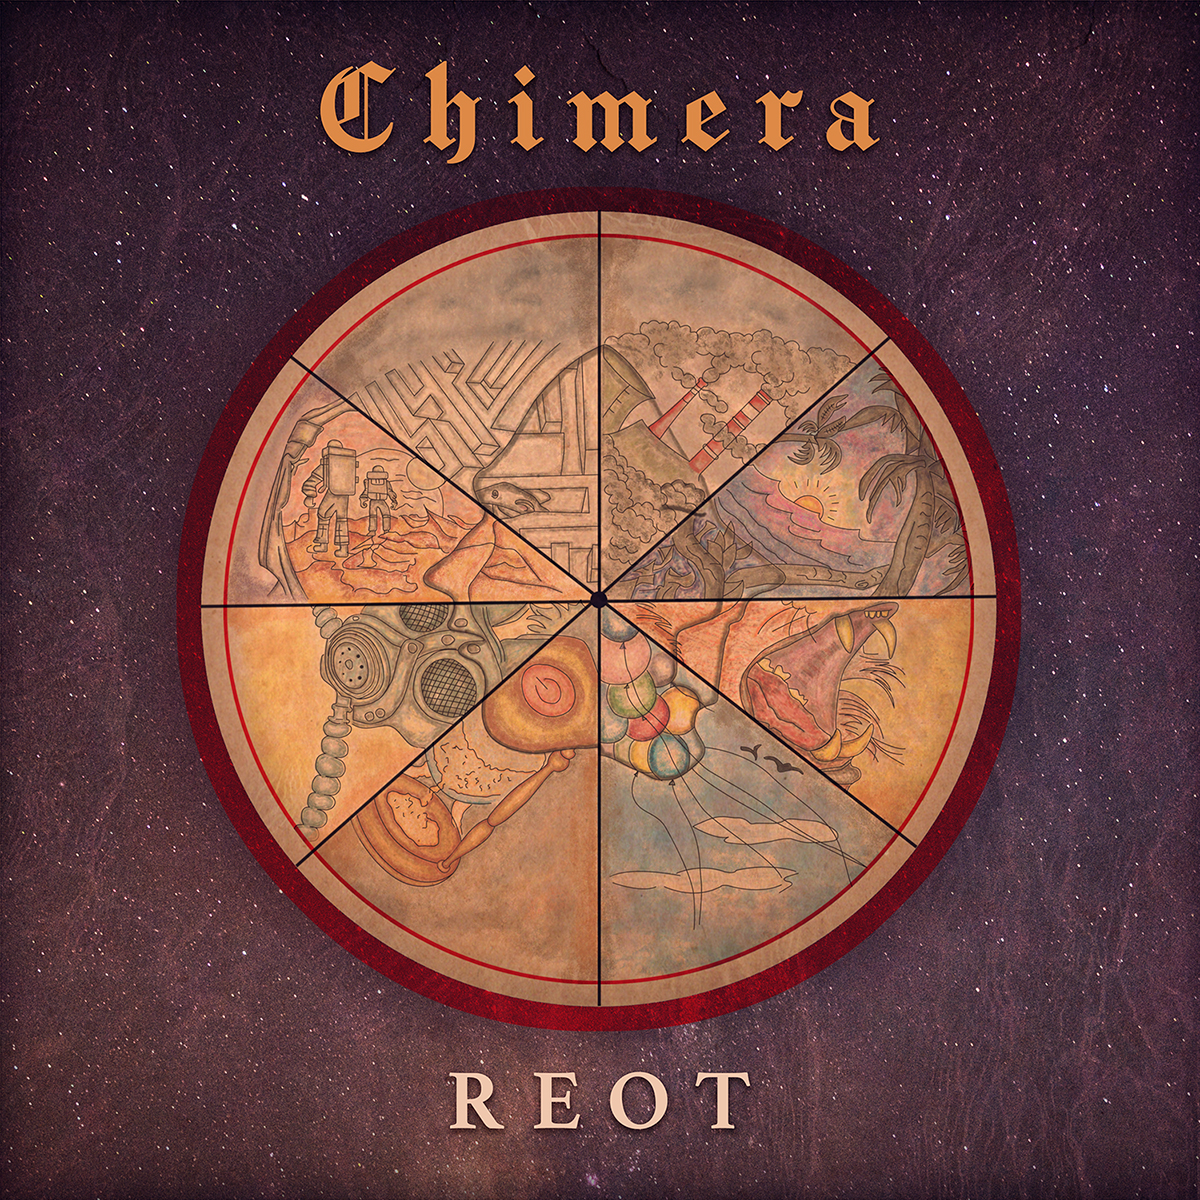 REOT, el rock de guitarras no muere, solo se transforma con «Chimera»